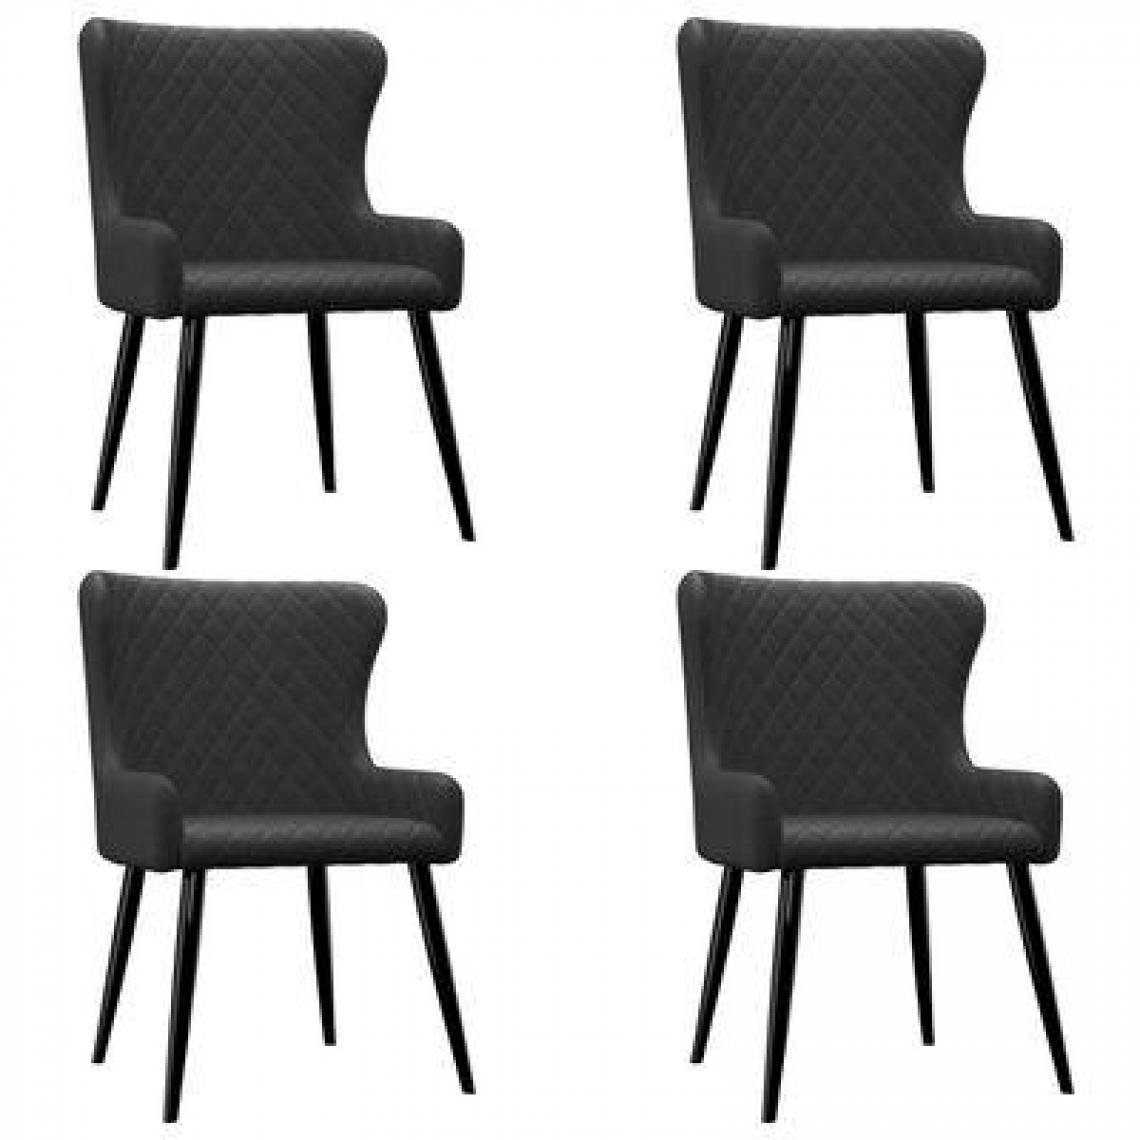 Decoshop26 - Lot de 4 chaises de salle à manger cuisine design et confortable en tissu noir CDS021844 - Chaises